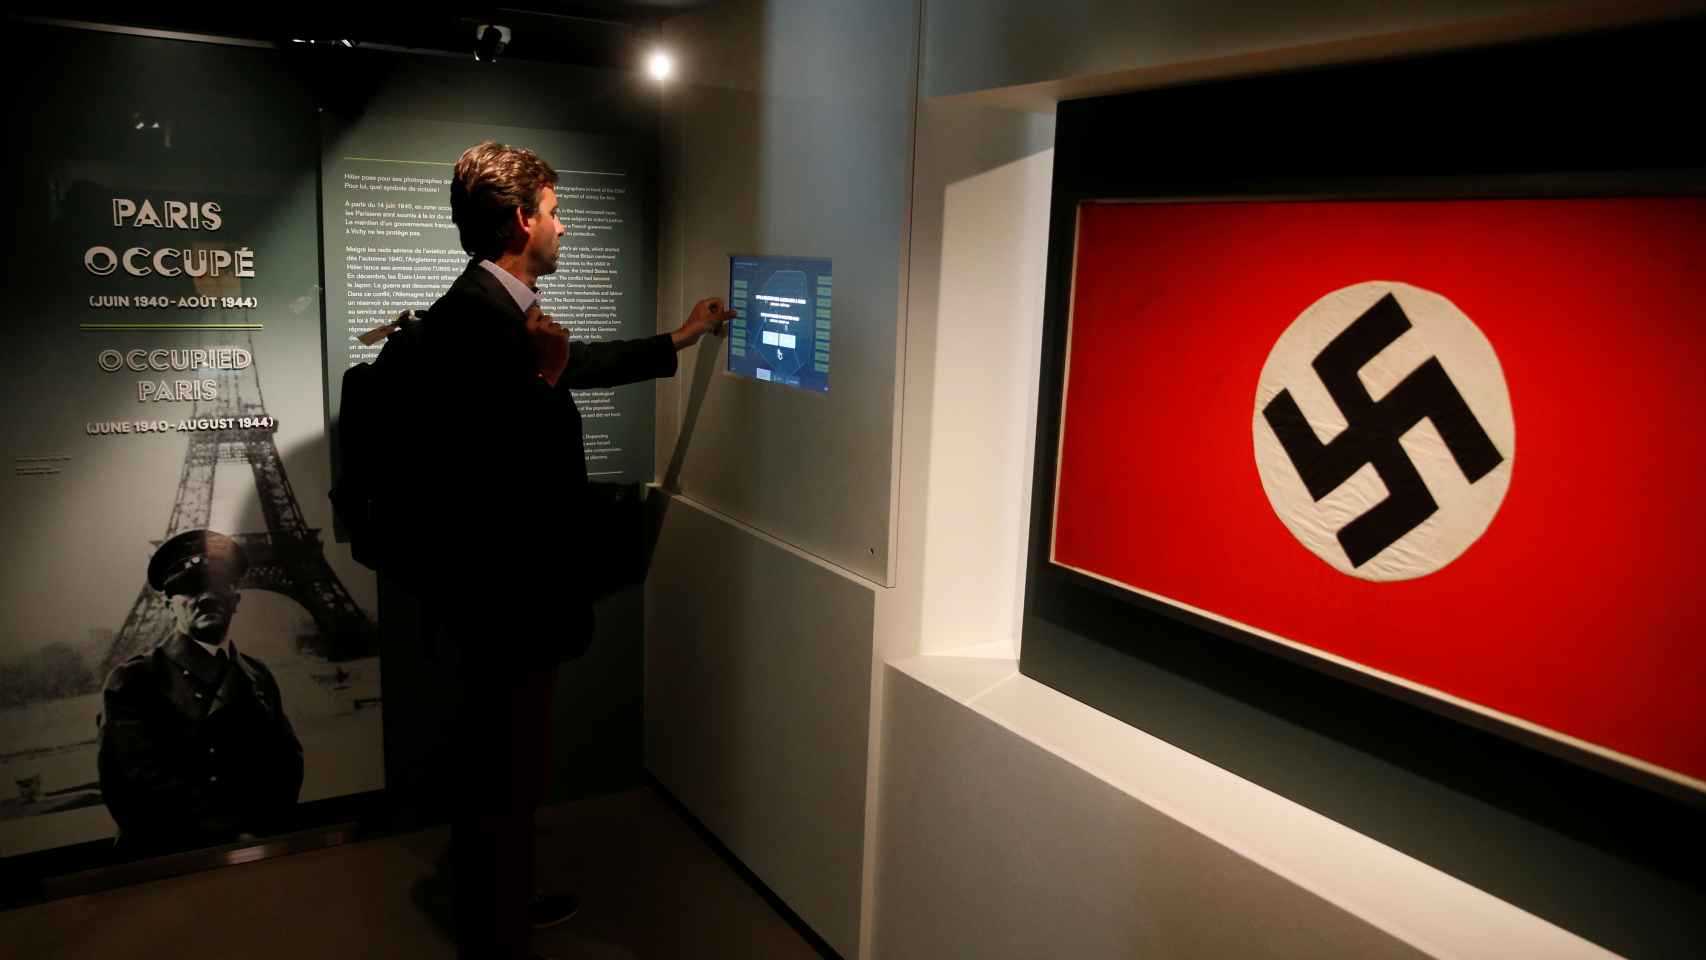 La exposición también muestra objetos pertenecientes a los nazis.